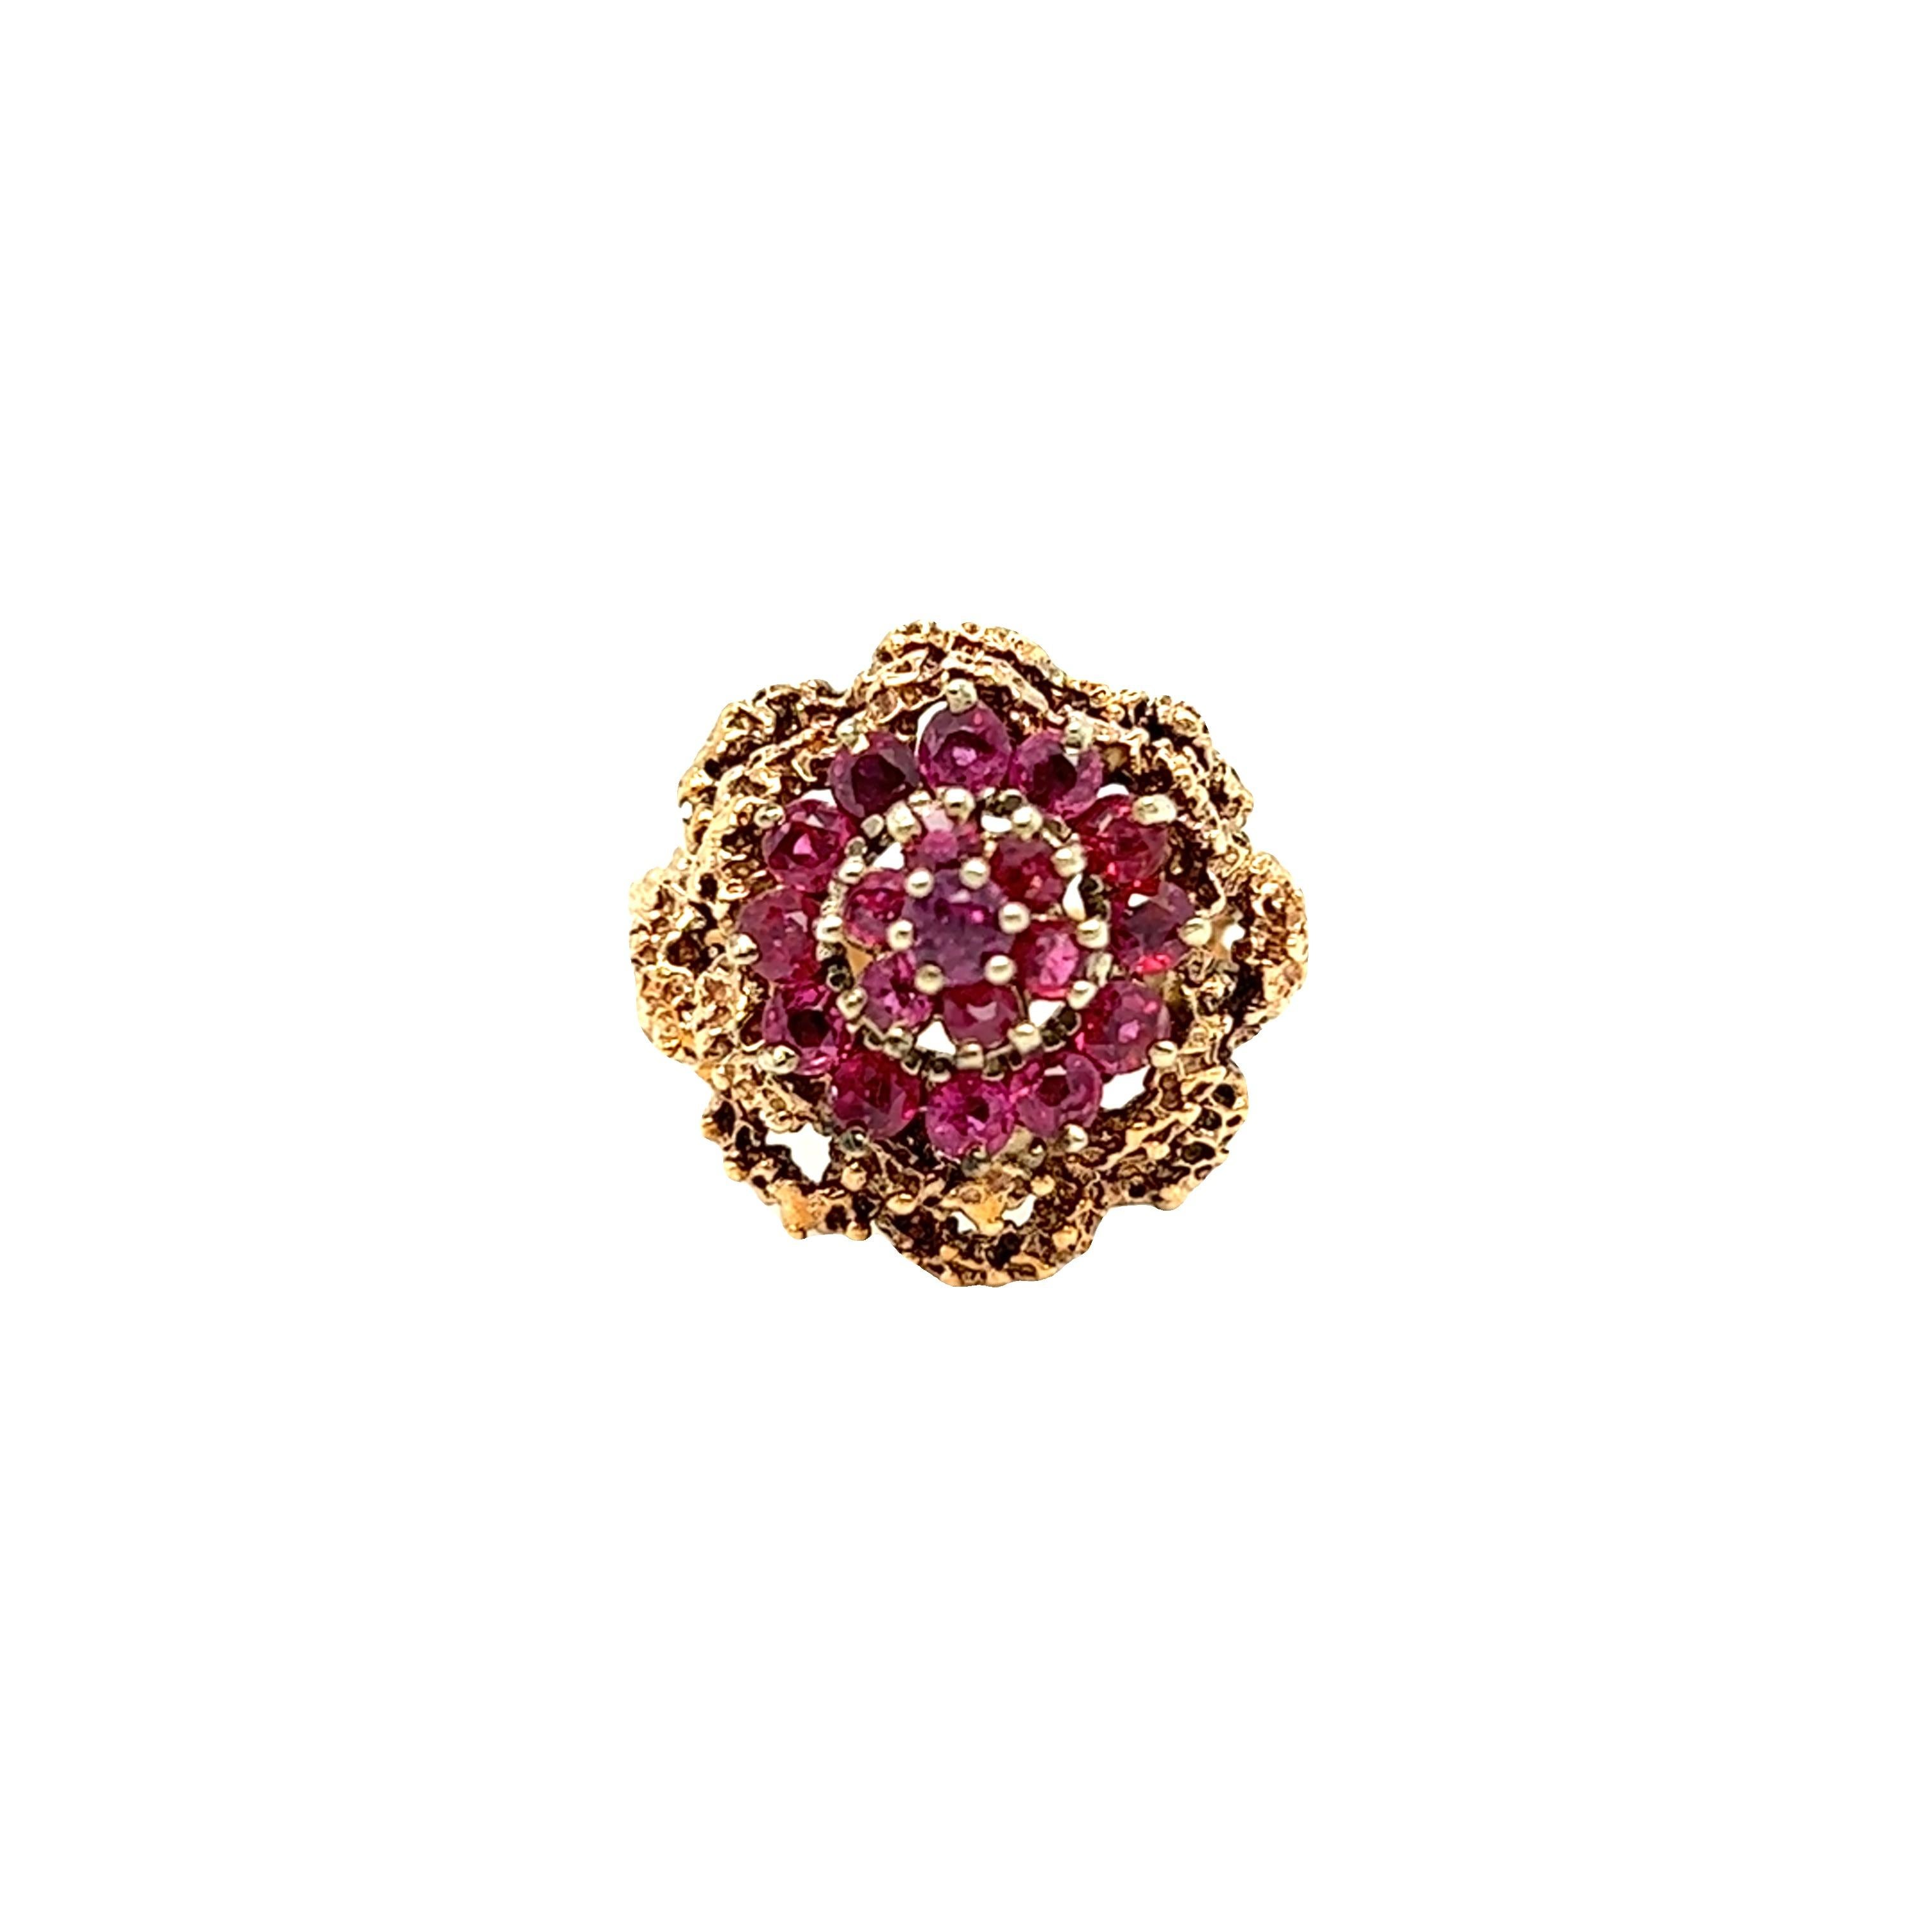 Dieser Ring im brutalistischen Stil besteht aus 19 Rubinen, die in einem floralen, kuppelförmigen Ring gefasst sind. Er ist aus 14k Gelbgold gefertigt. Das Gesamtgewicht des Rubins beträgt etwa 1 Karat. Der Ring ist derzeit in Größe 6 und kann in